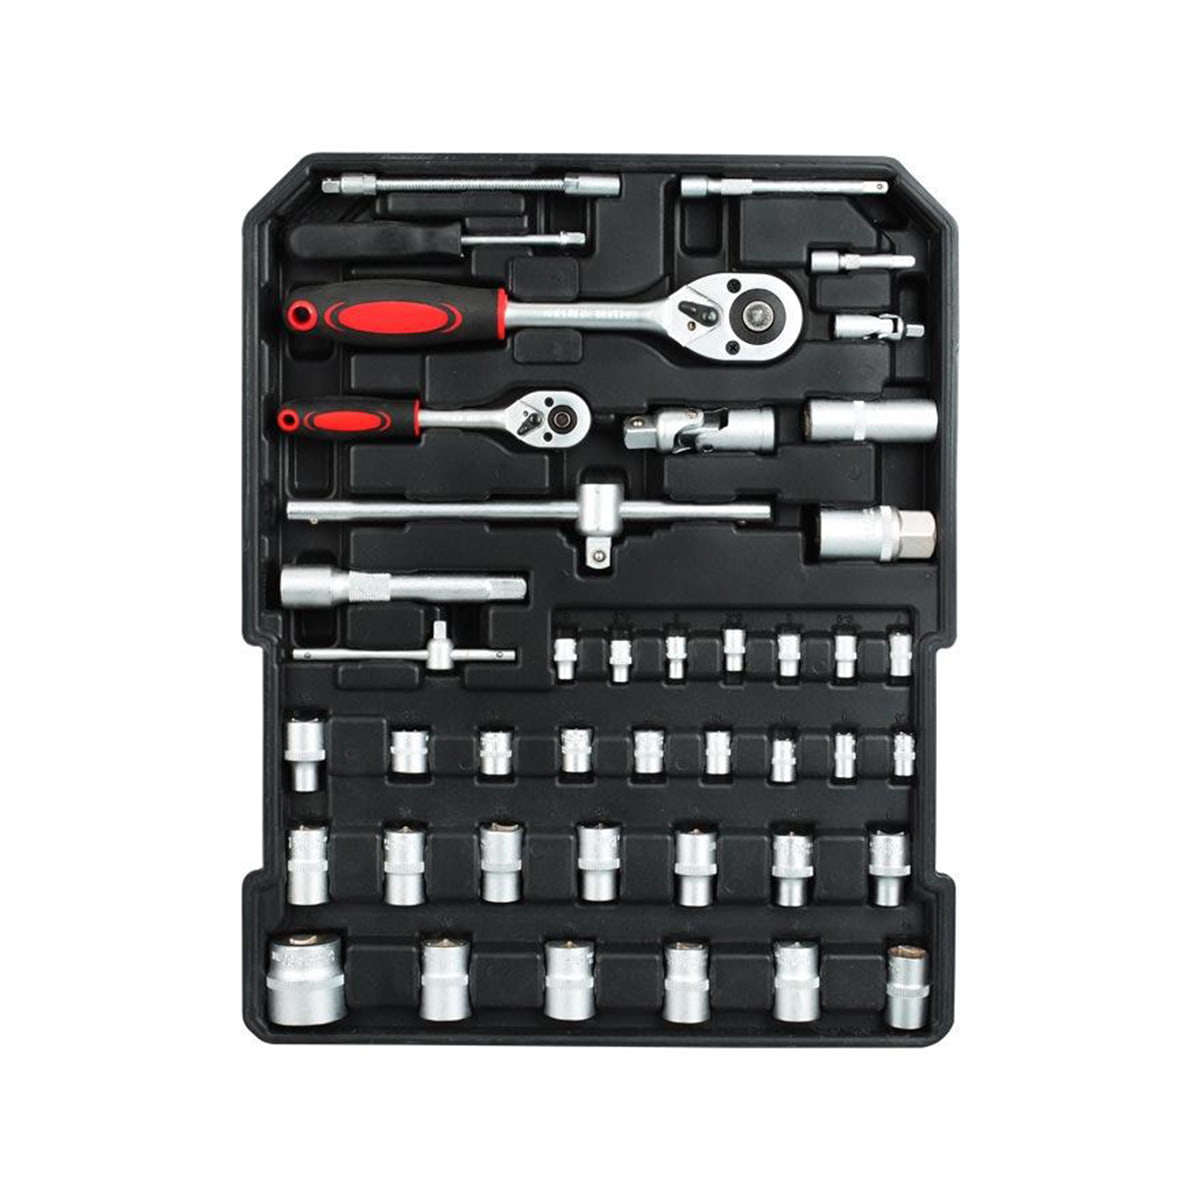 499 Pcs Ferramentas Professional Hardware Automotive Tool Socket Kit de Reparao de Automobile Tools Set